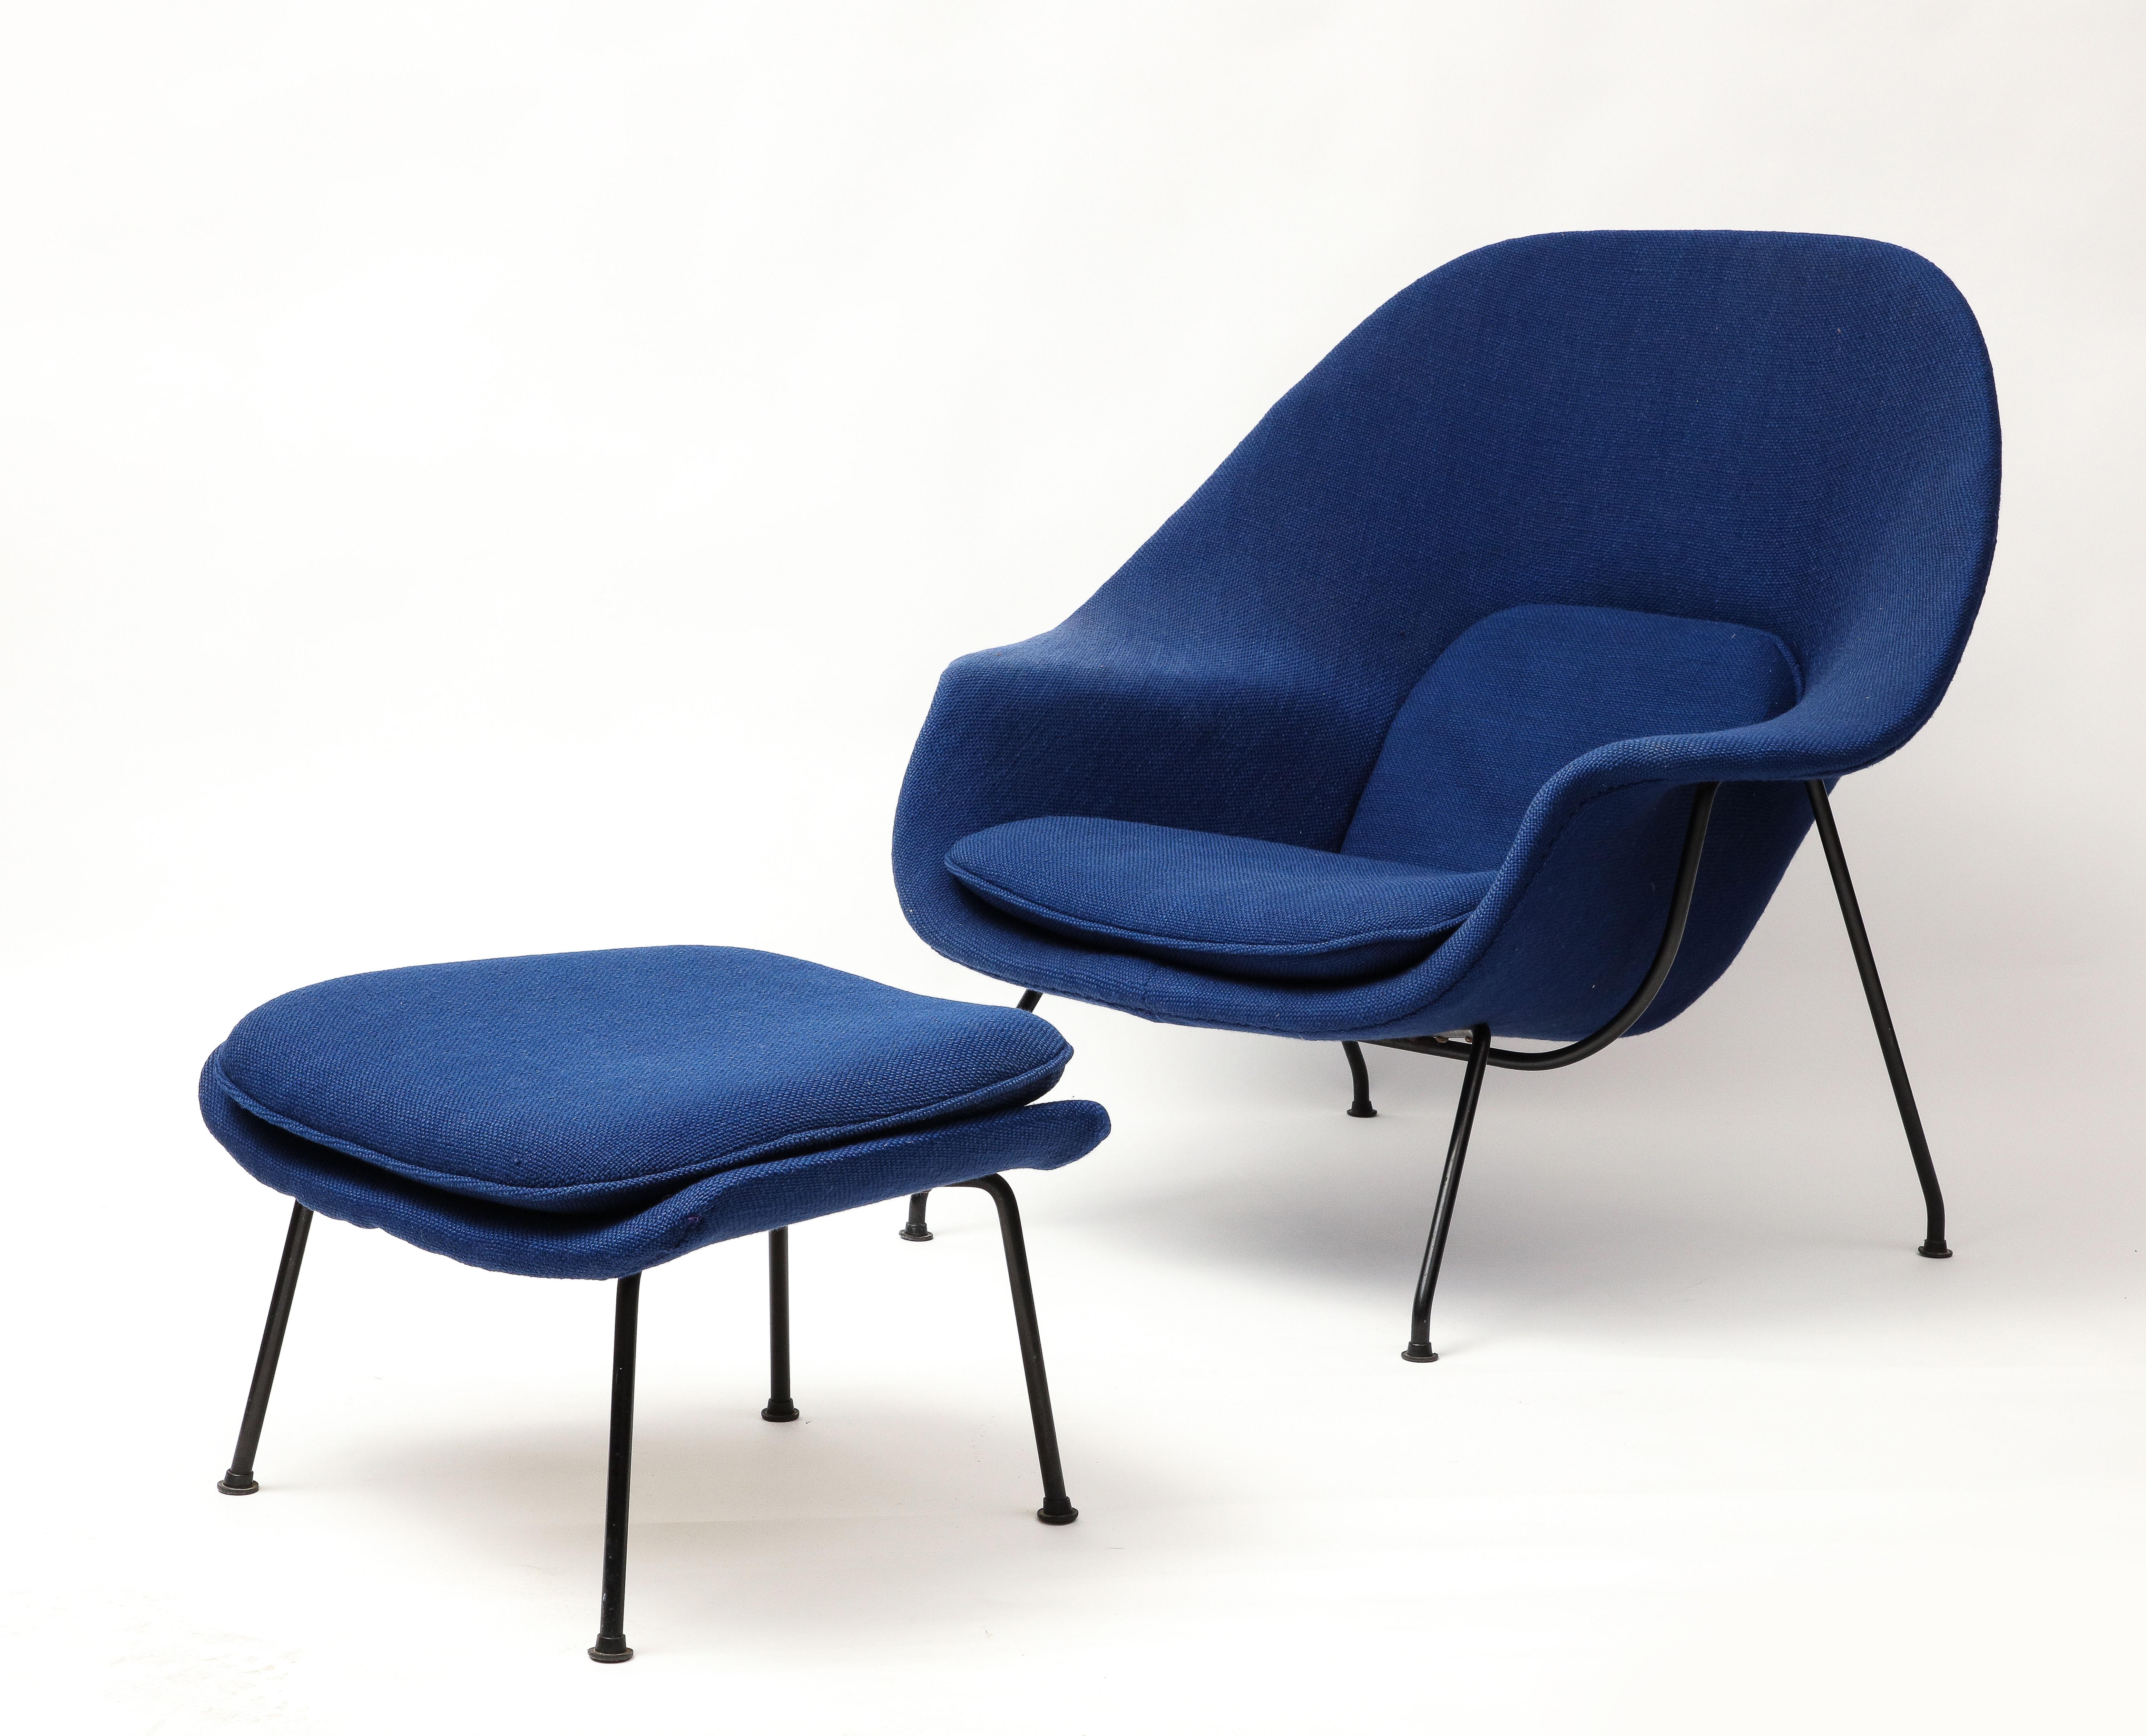 Early Eero Saarinen Knoll Womb Chair, Blue Upholstery, Black Wrought Iron Frame. Vendue en l'état. La chaise est dans son état d'origine et aura besoin d'un nouveau rembourrage si vous envisagez de vous y prélasser. La mousse est dure (grillée à